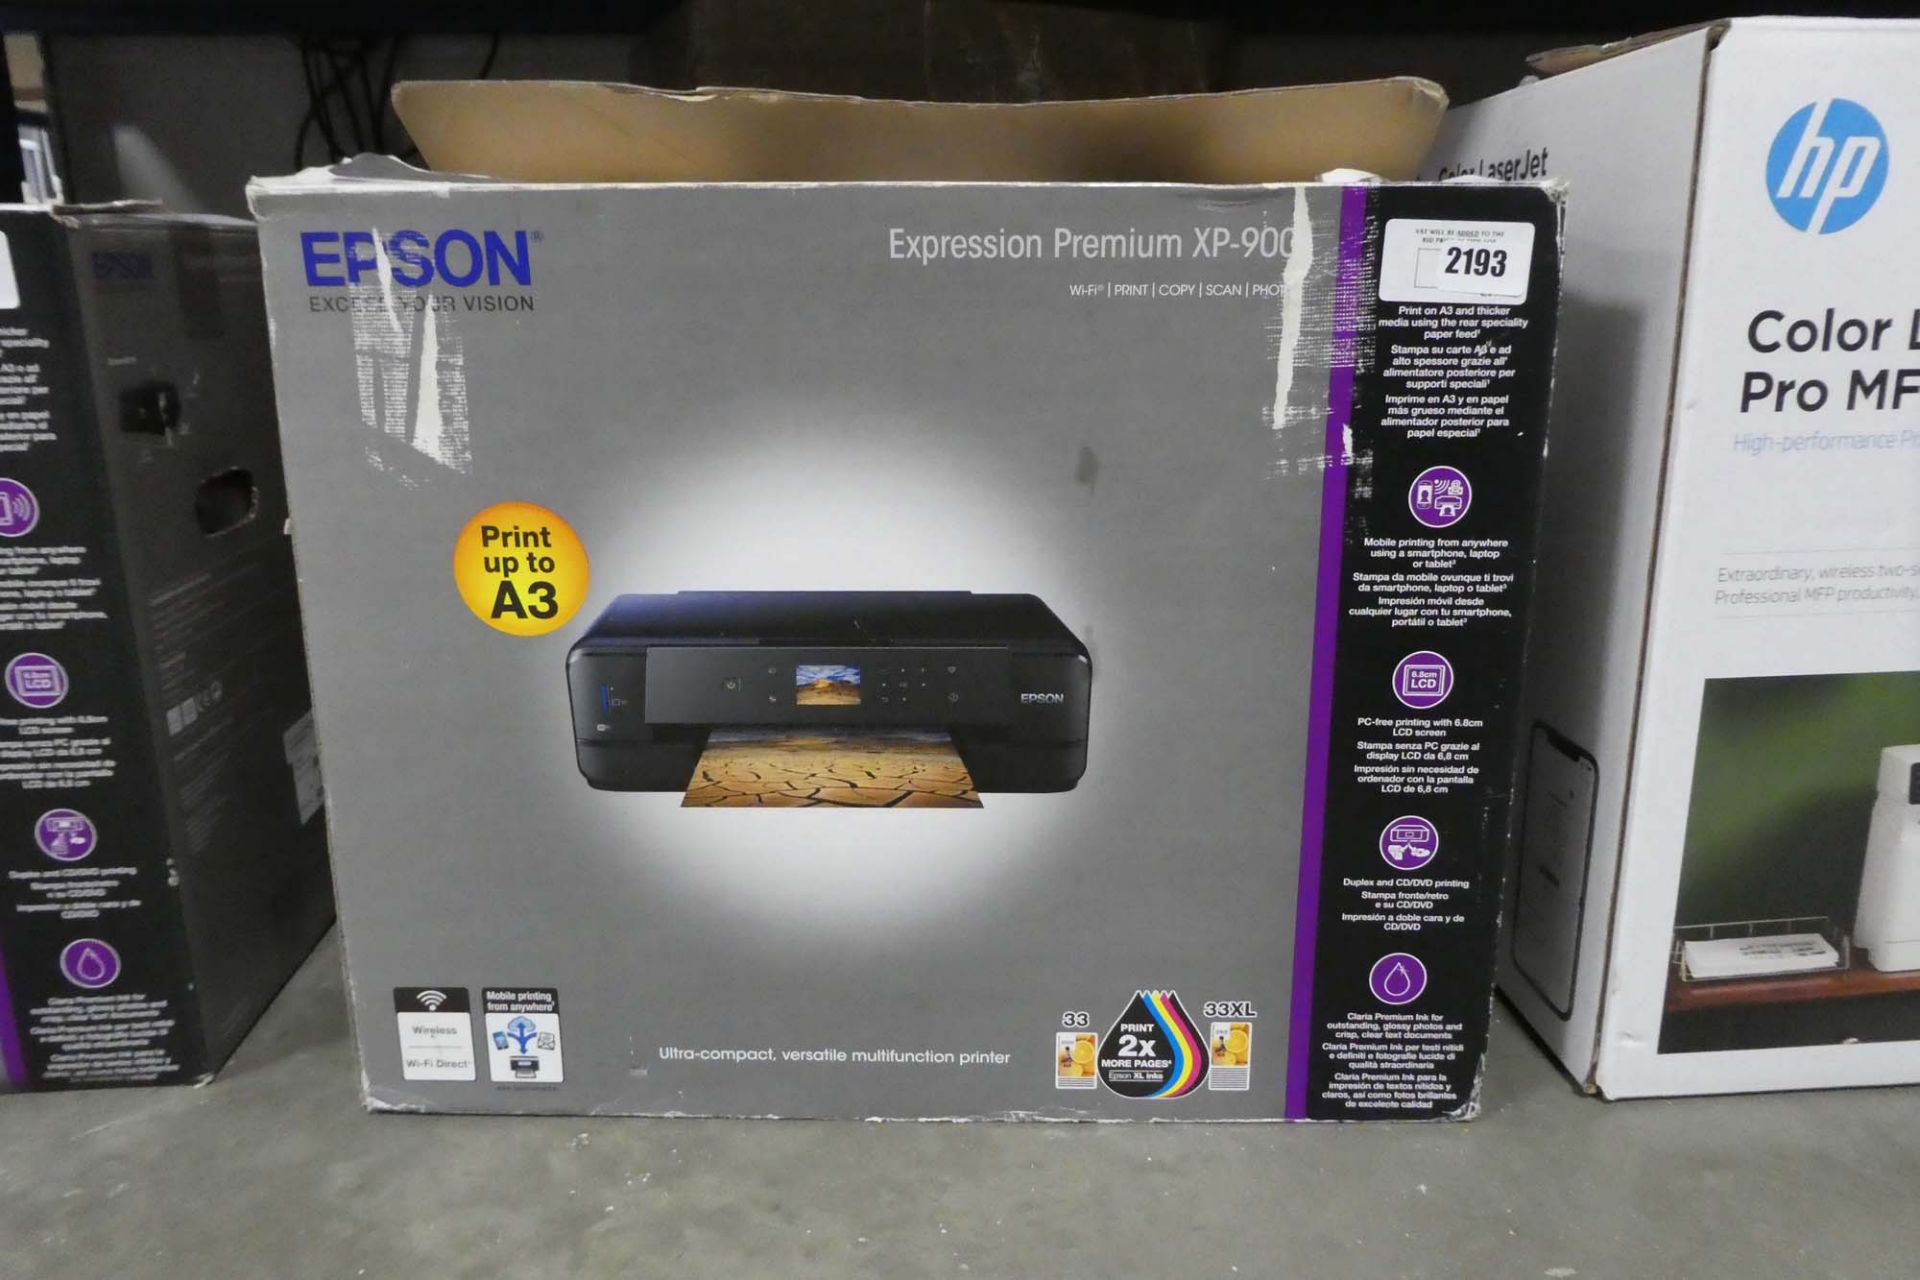 Epson Expression Premium XP900 printer